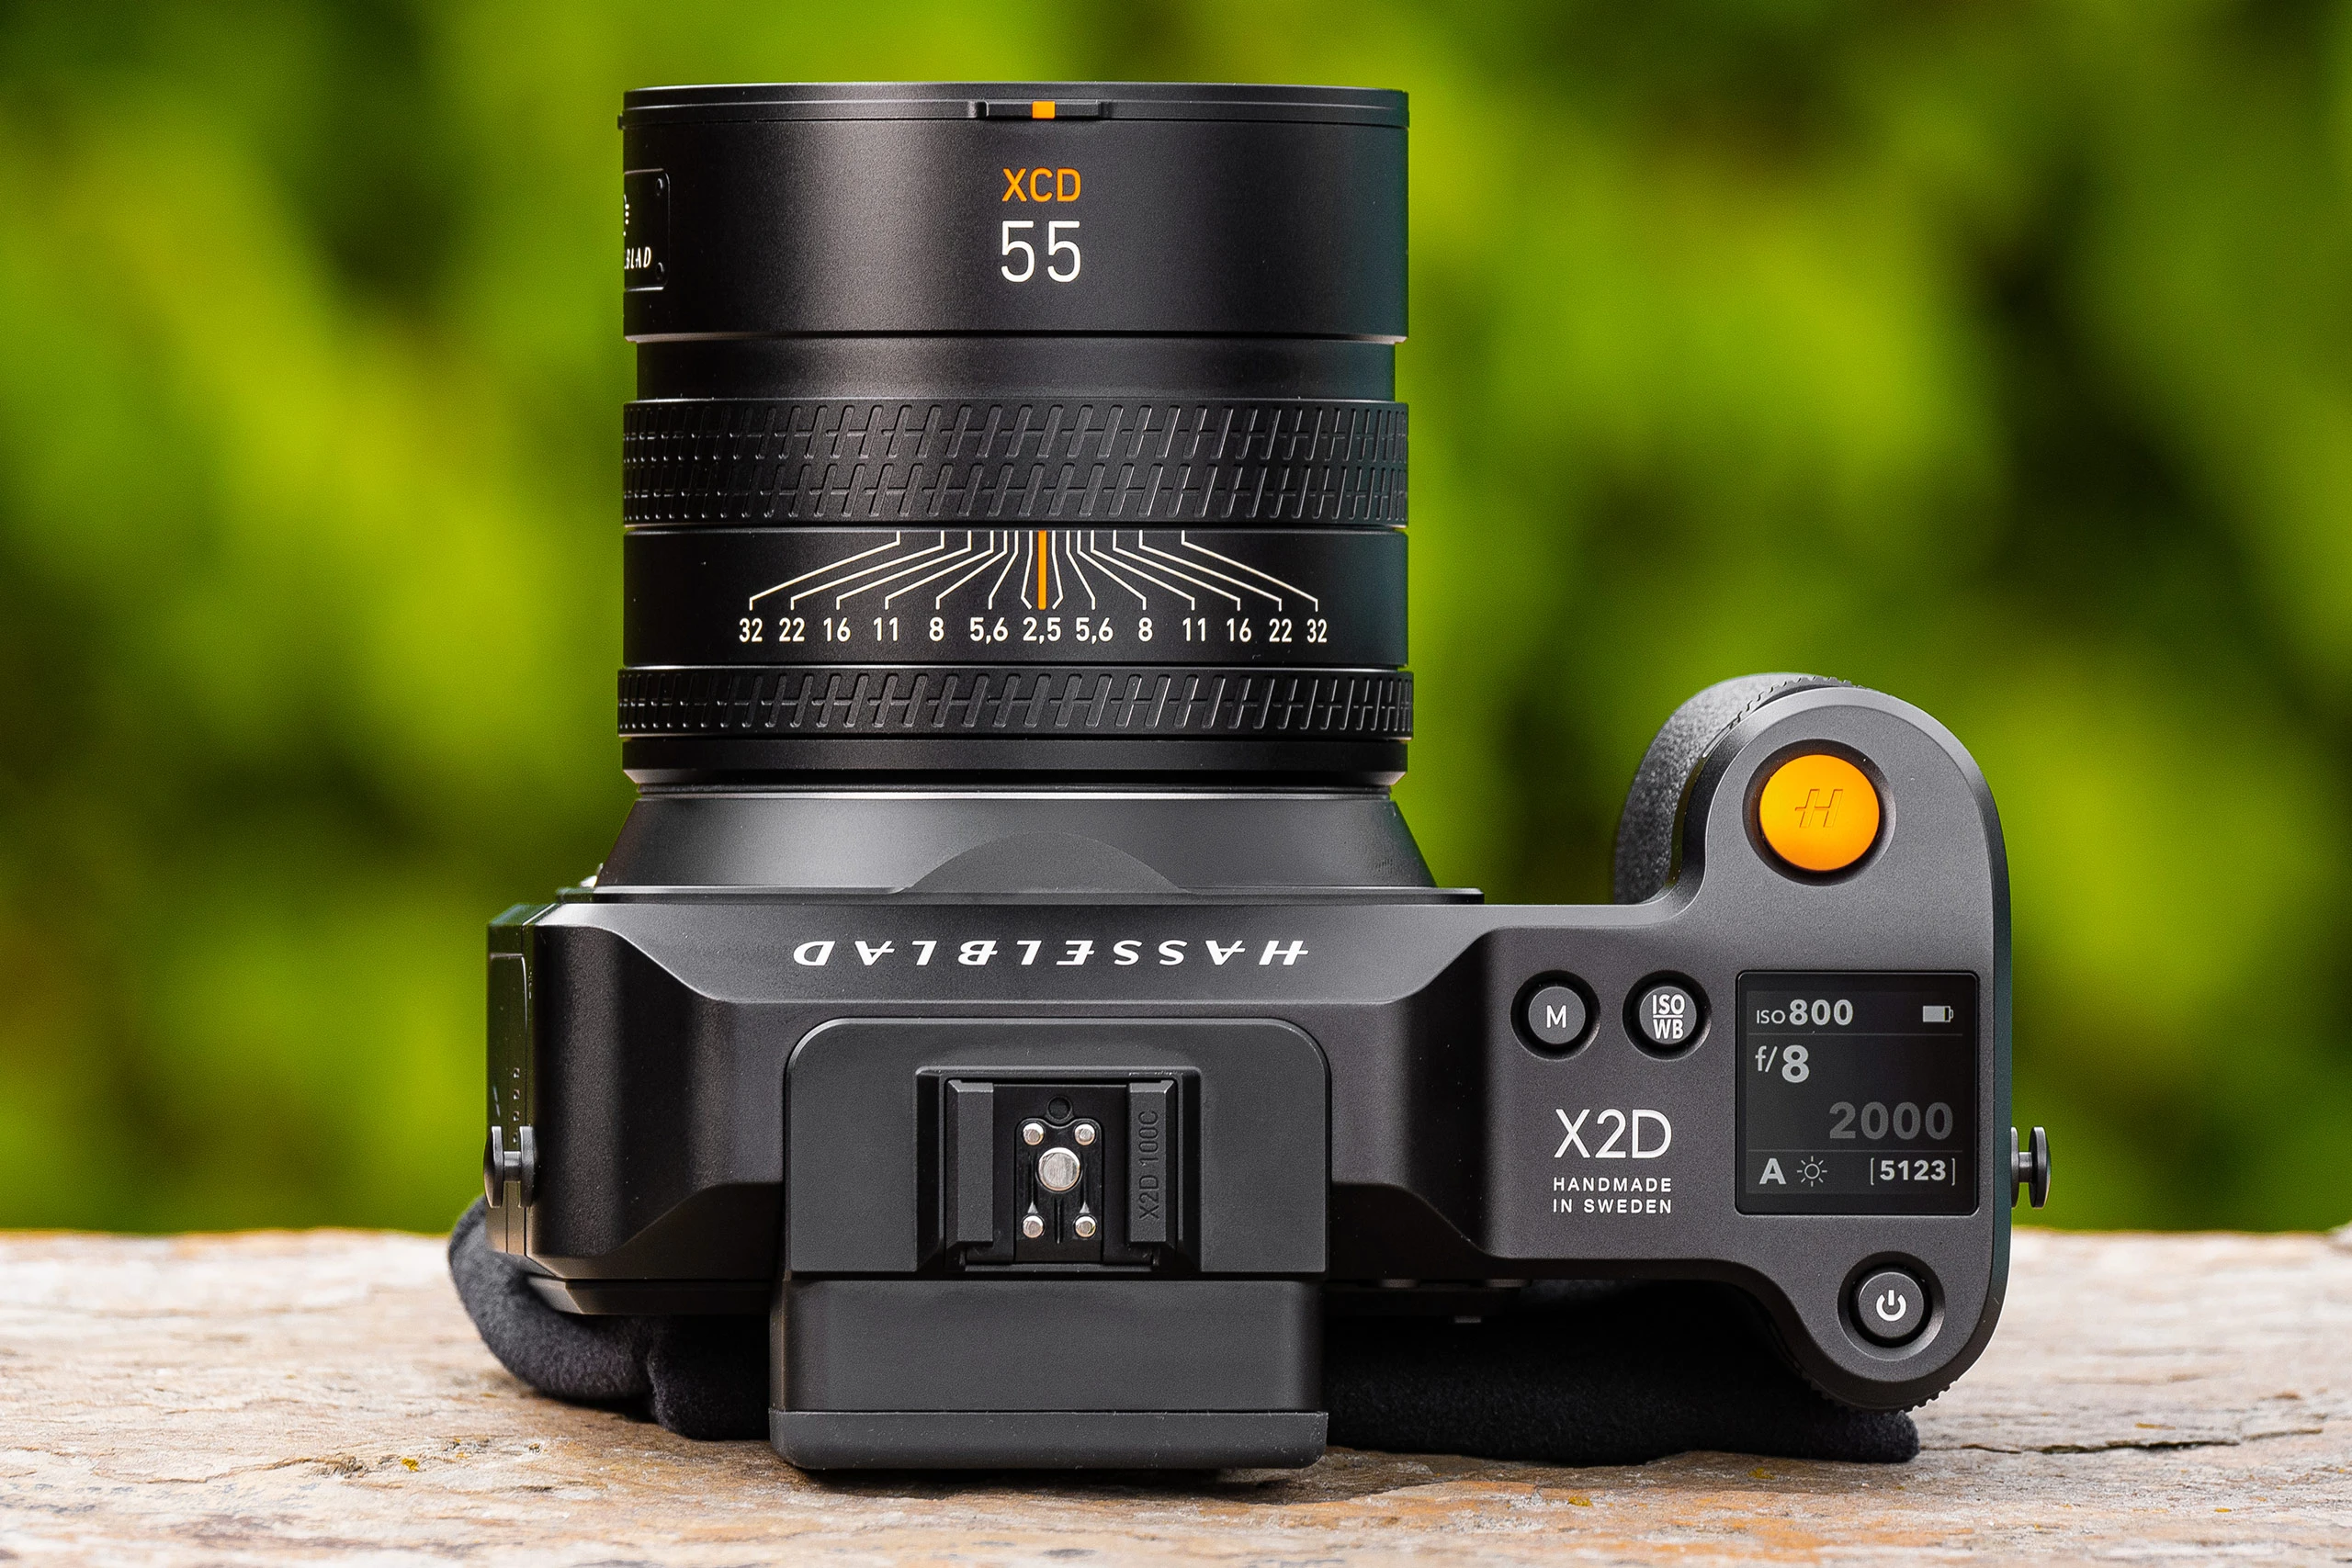 Hasselblad telah merilis pembaruan firmware 2.0.0 untuk kamera mirrorless format medium X2D yang menambahkan banyak fitur baru dan peningkatan kegunaan yang meningkatkan kemampuannya secara signifikan.